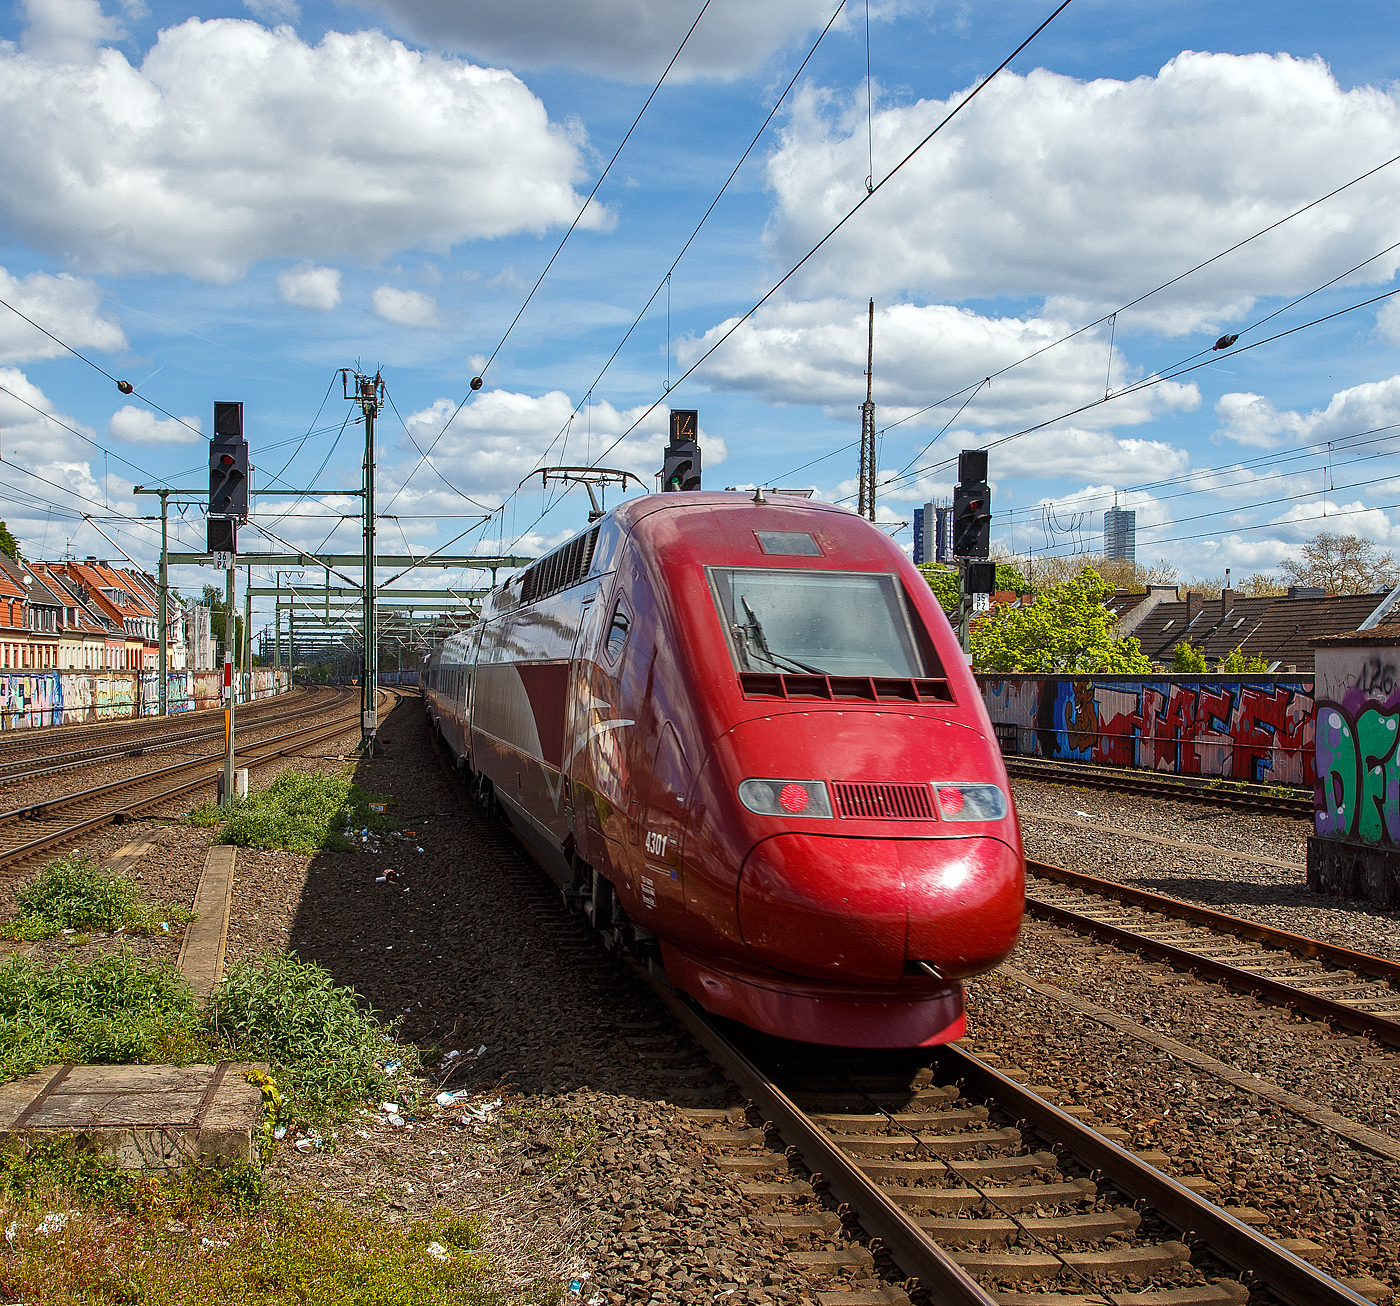 Der PBKA Thalys 4301 (TGV Series 43000) (93 88 0043 010-x B-TH etc.) fährt am 30.04.2023, als Thalys 9423 von Paris Gare du Nord (Paris Nord) via Bruxelles-Midi (Brüssel-Süd), Liège-Guillemins (Lüttich) und Aachen Hbf nach Köln Hbf, durch den Bahnhof Köln-Ehrenfeld in Richtung Köln Hbf, welchen er dann bald erreicht.